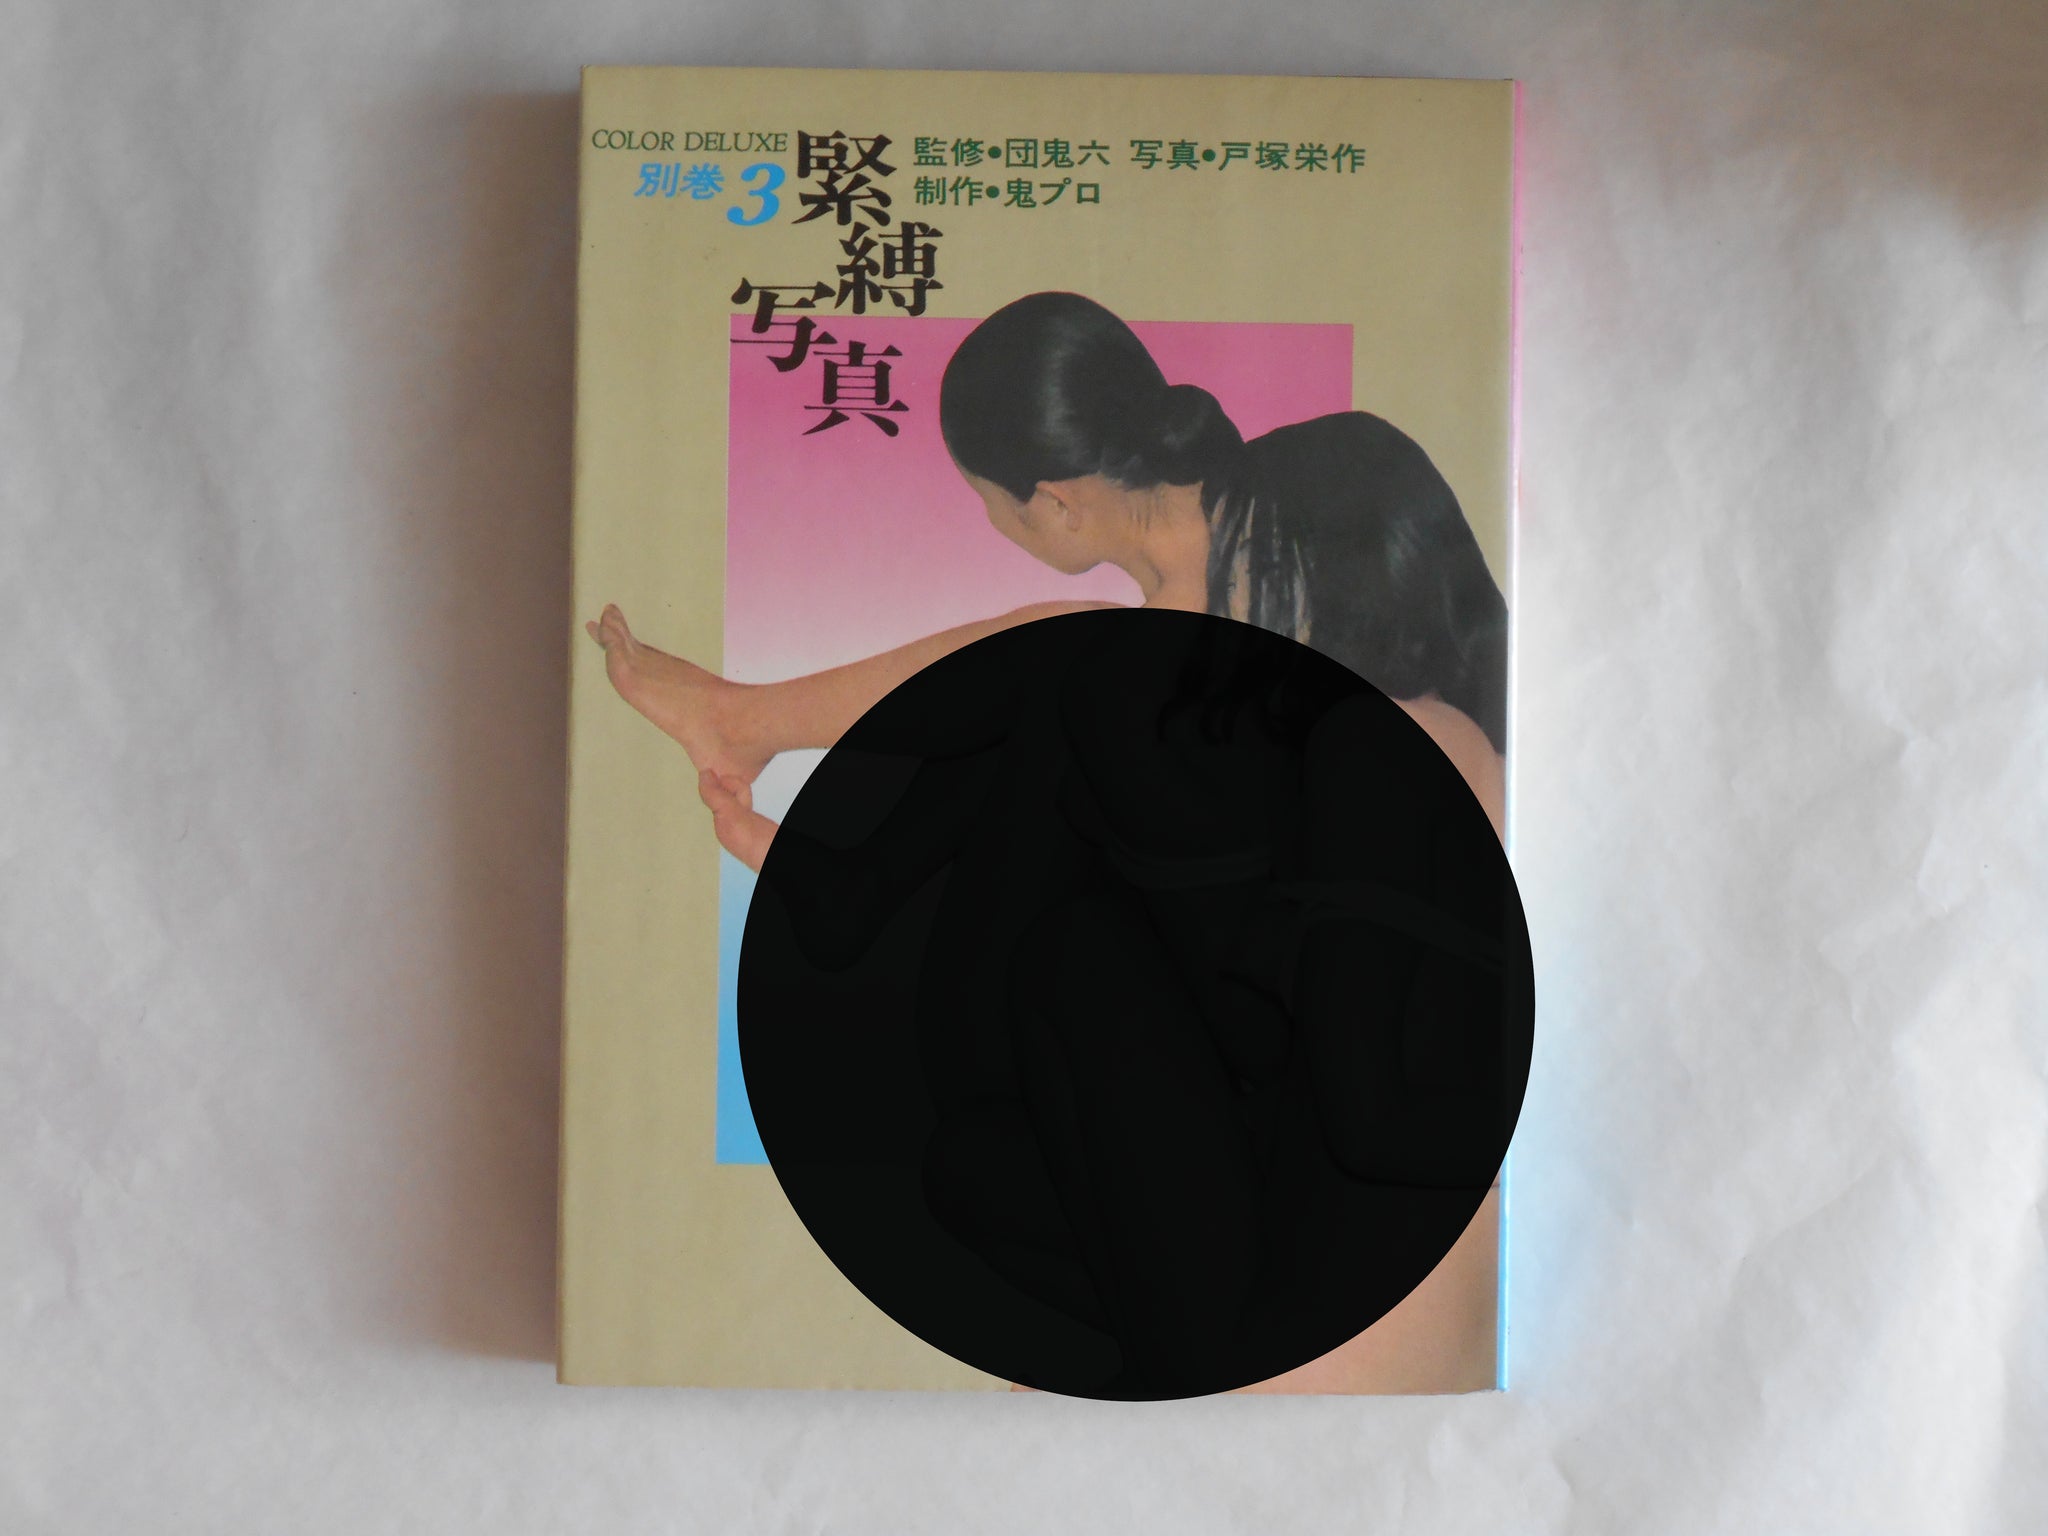 Kinbaku shashin color deluxe vol.3 | Oniroku Dan | Haga Shoten 1972